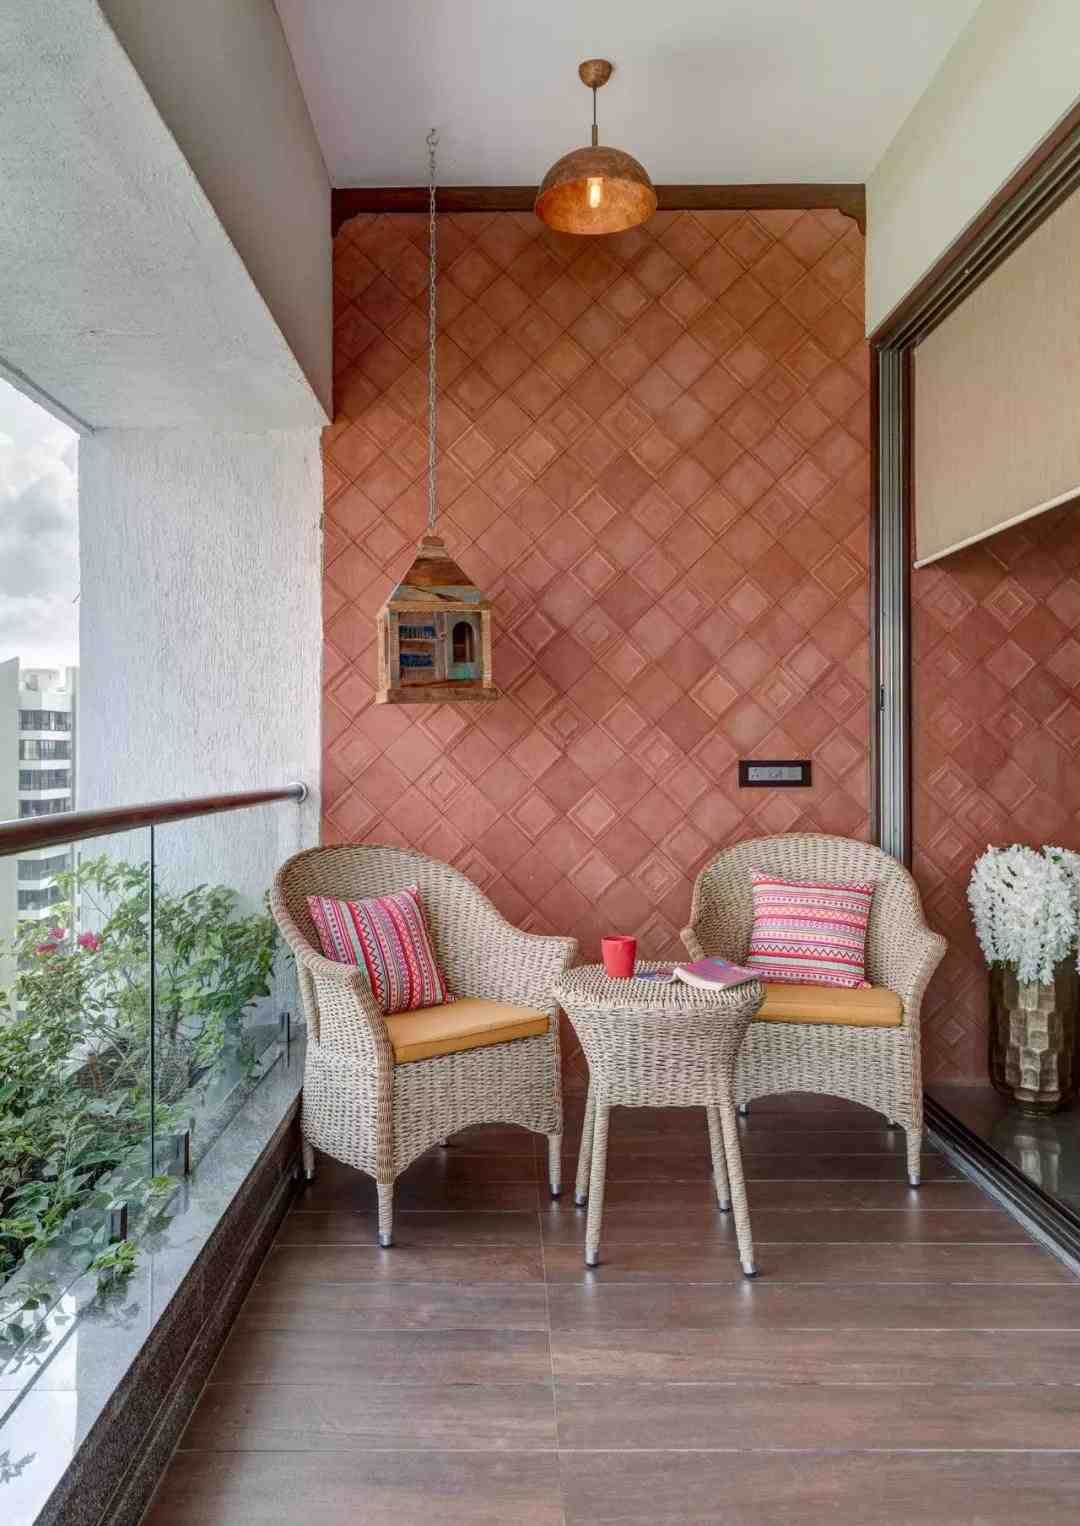 Orientalischer Balkon klein Sitzkissen Terrasse einrichten Wohntrends exotisch